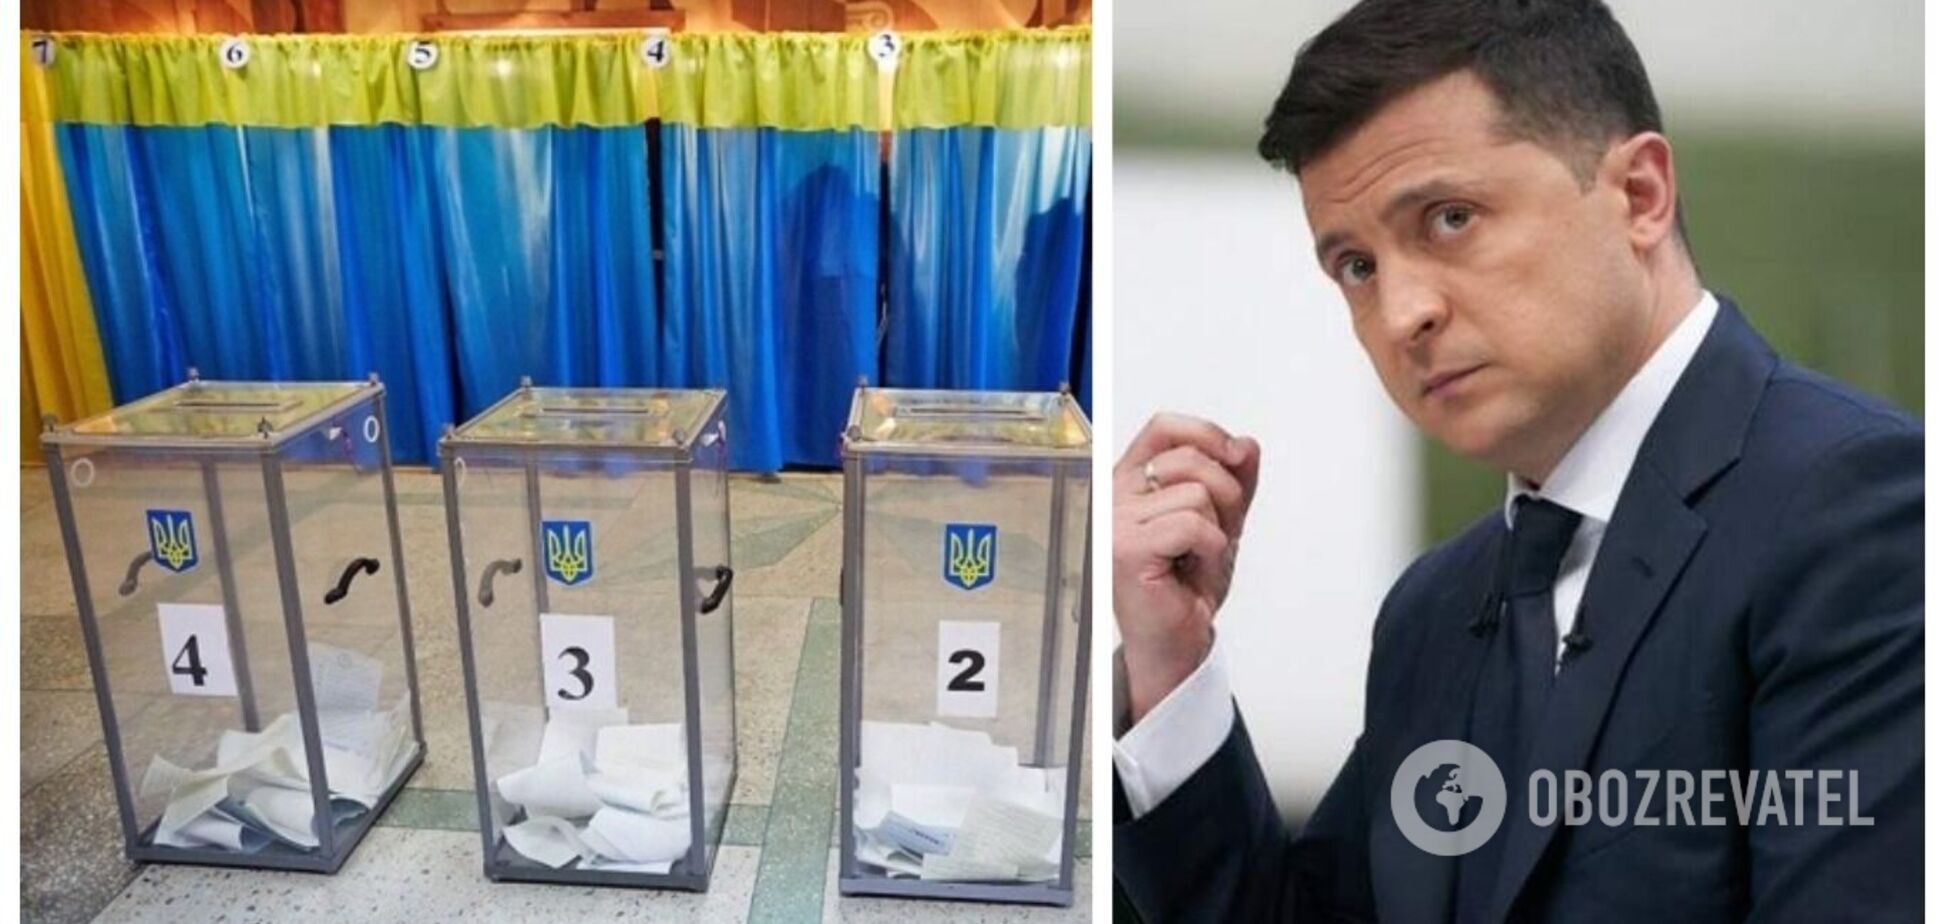 Зеленський лідирує у президентському рейтингу, на другому місці – Порошенко: дані соцопитування